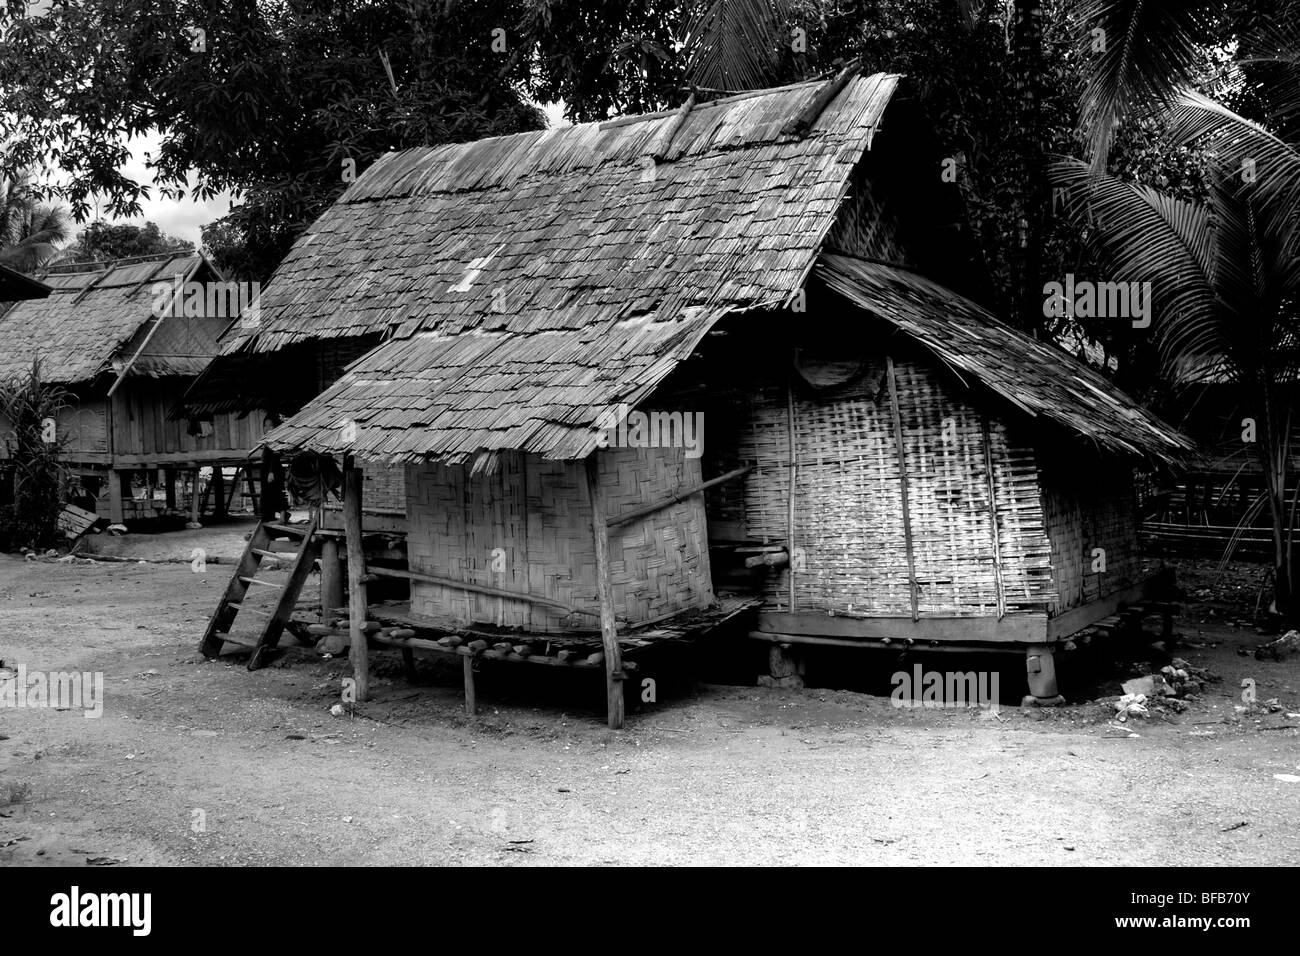 Maison en bois traditionnelle, muang ngoi, Laos Banque D'Images